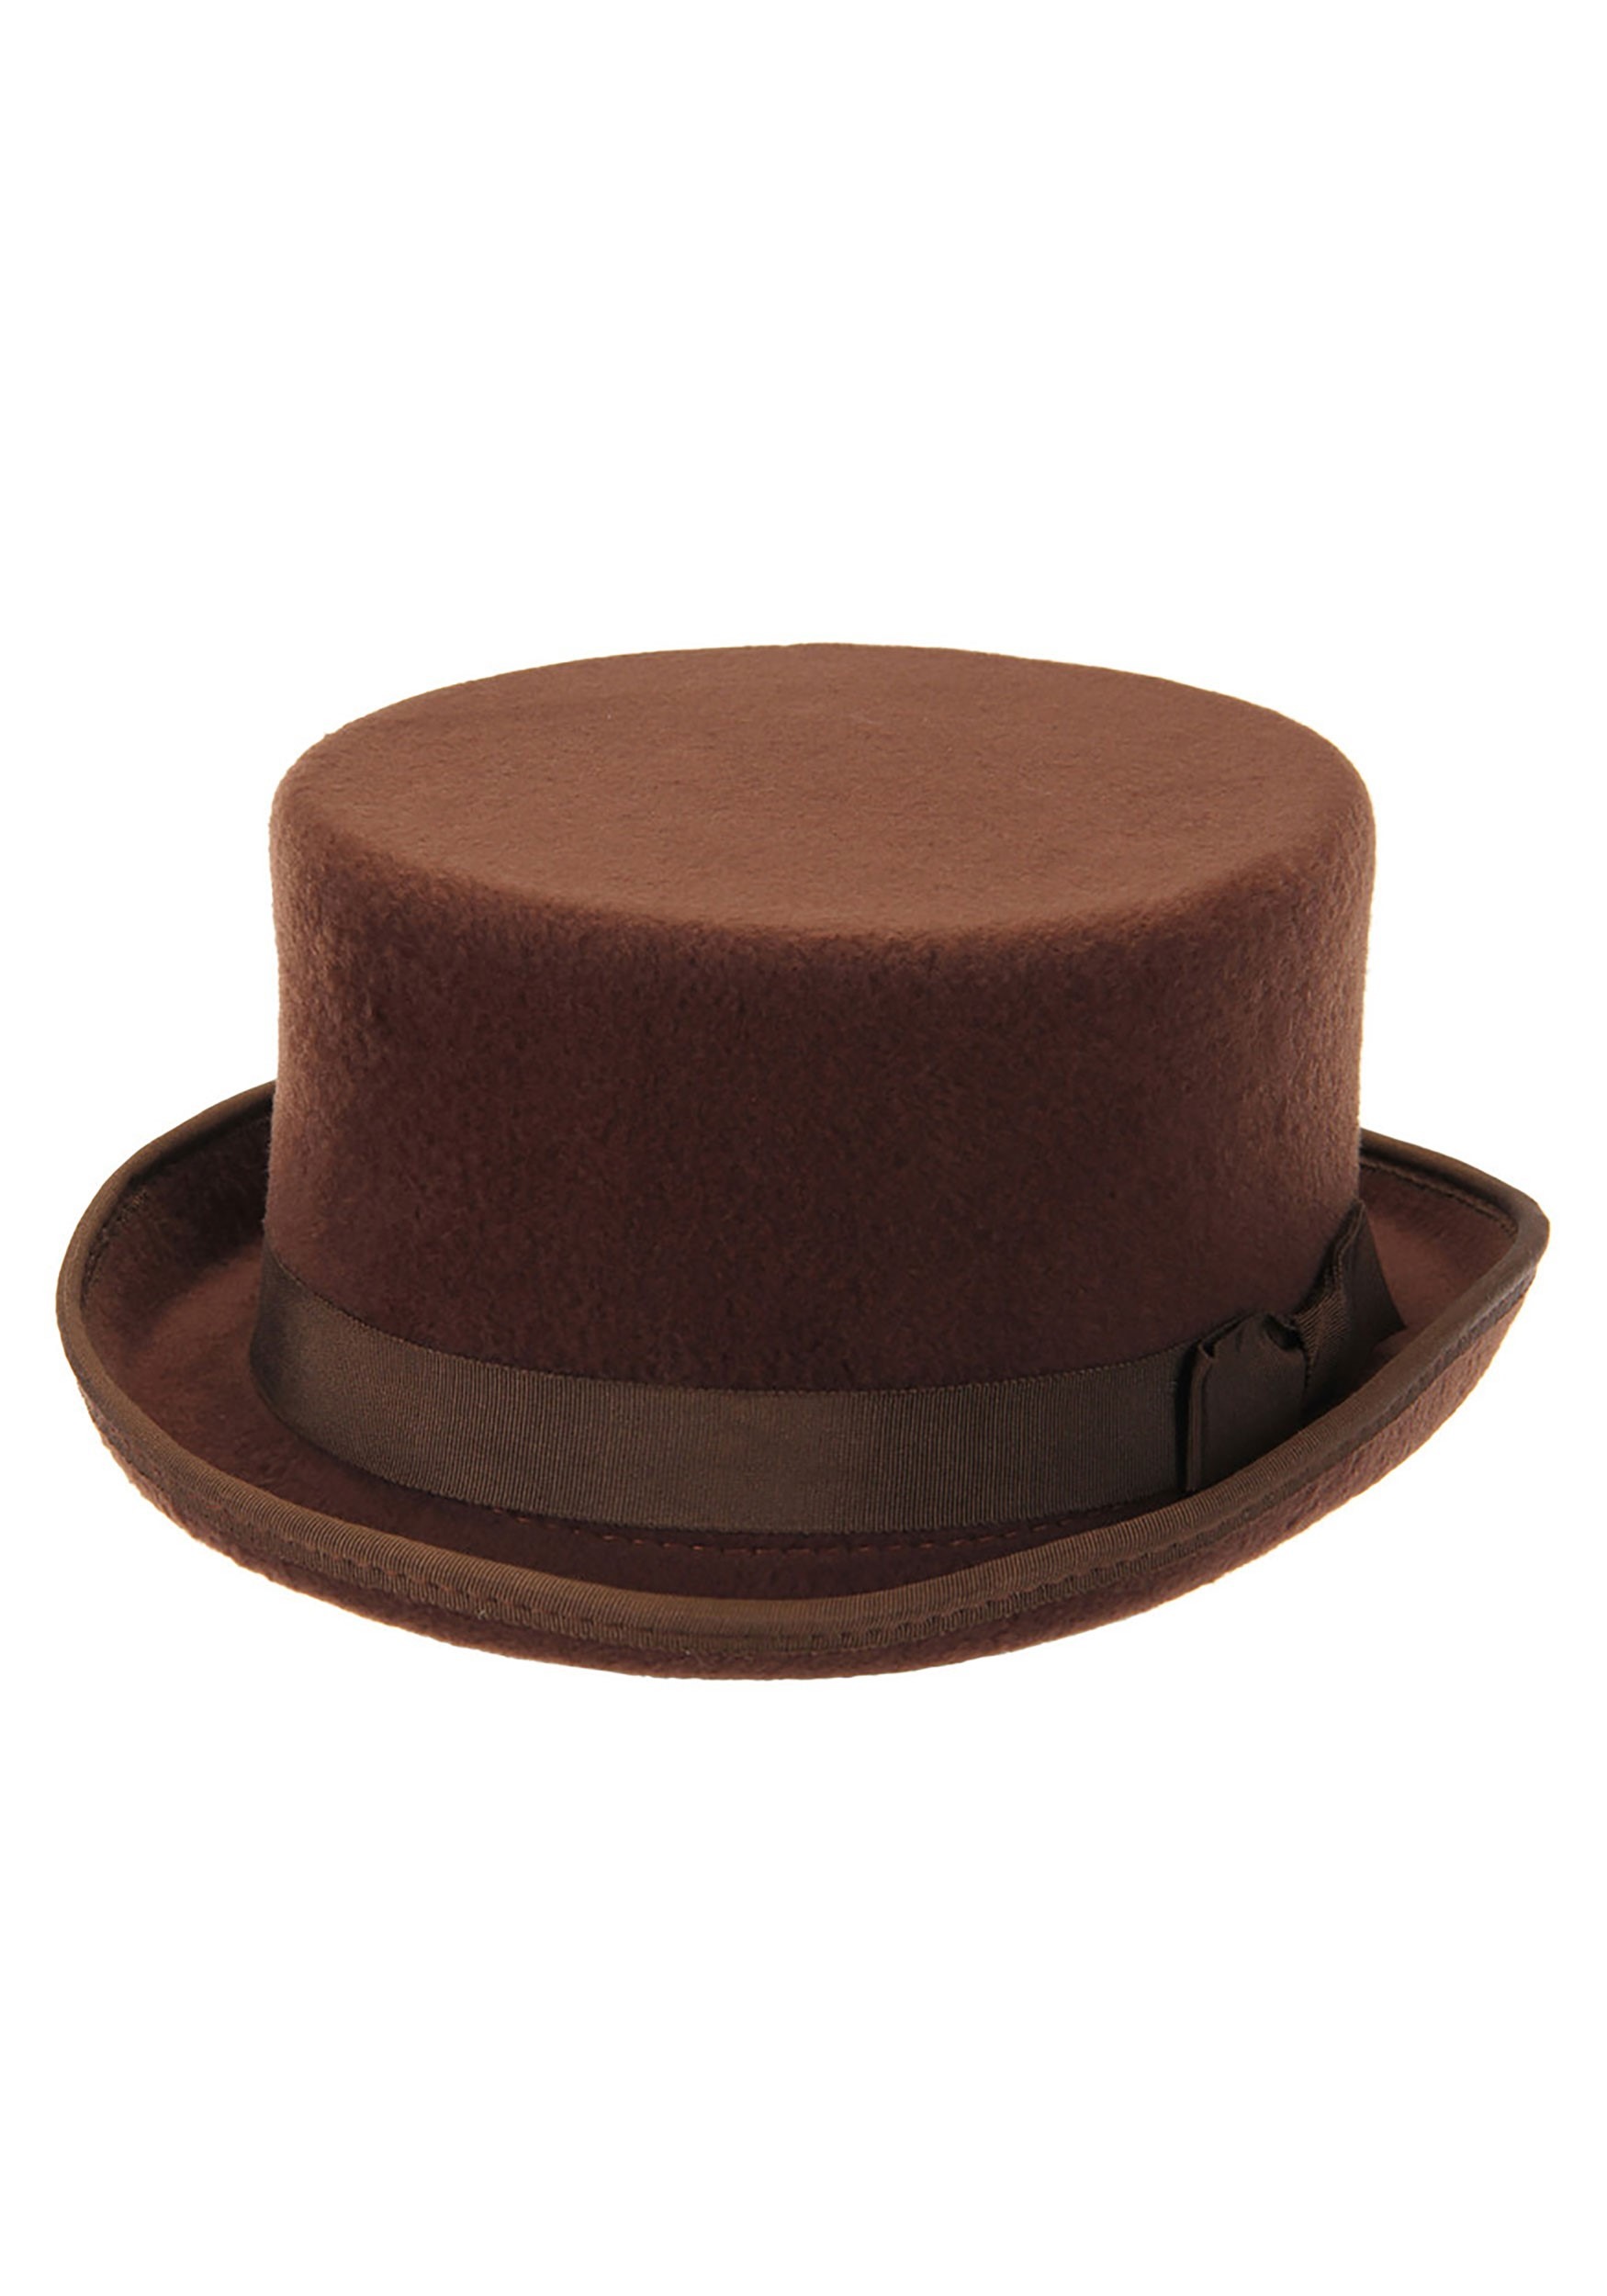 Brown John Bull Adult Costume Hat